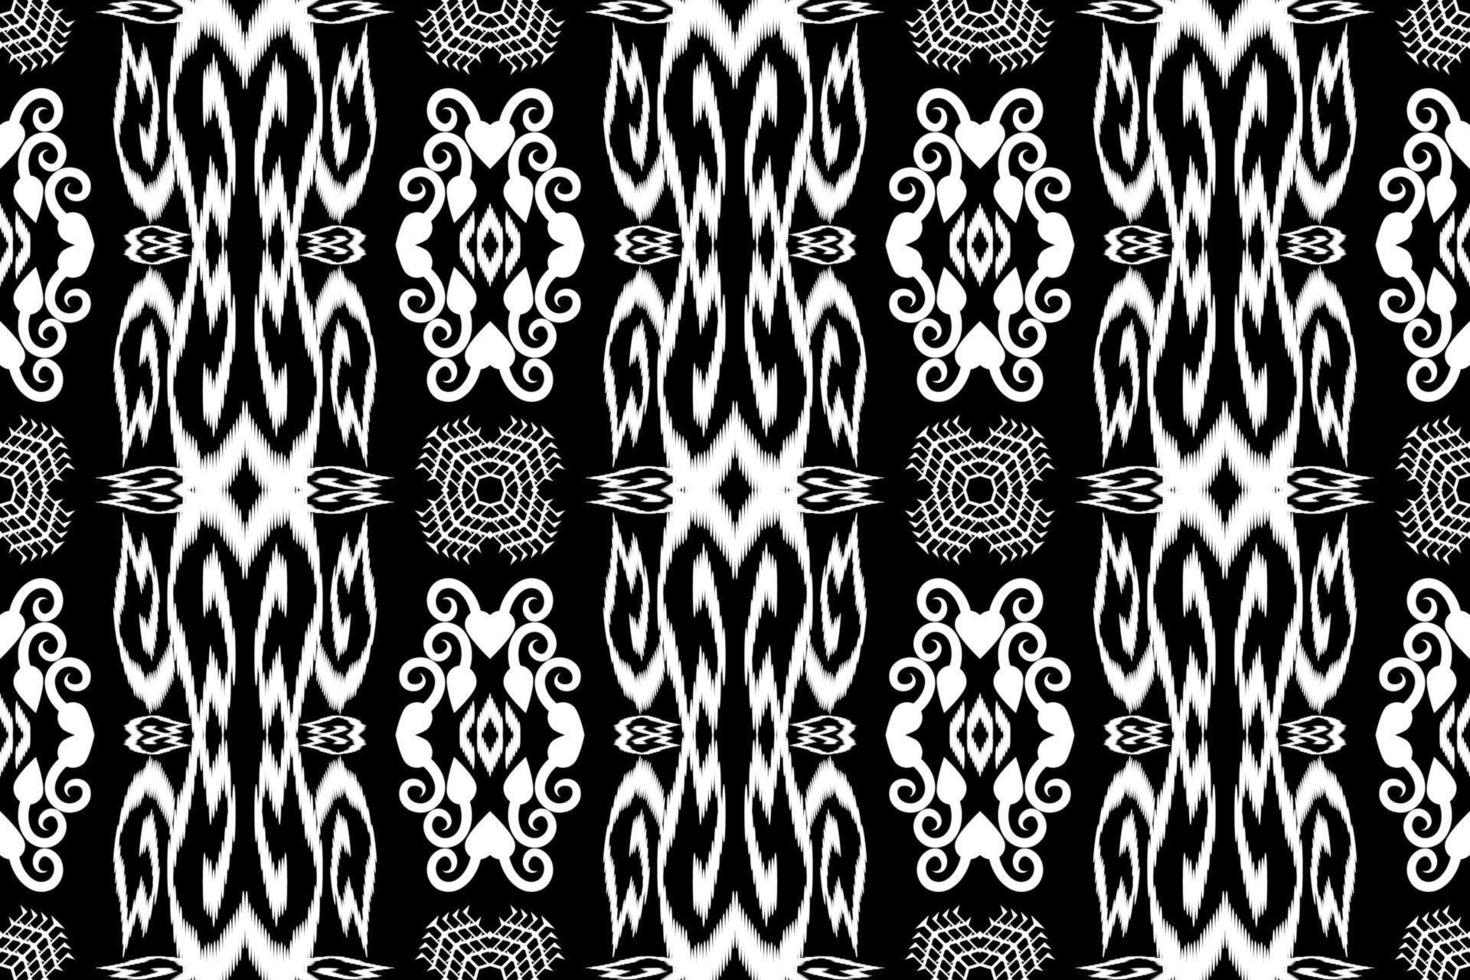 mooie borduurwerk.geometrische etnische oosterse patroon traditionele.aztec stijl,samenvatting,vector,illustration.design voor textuur,stof,kleding,inwikkeling,mode,tapijt,afdrukken. vector